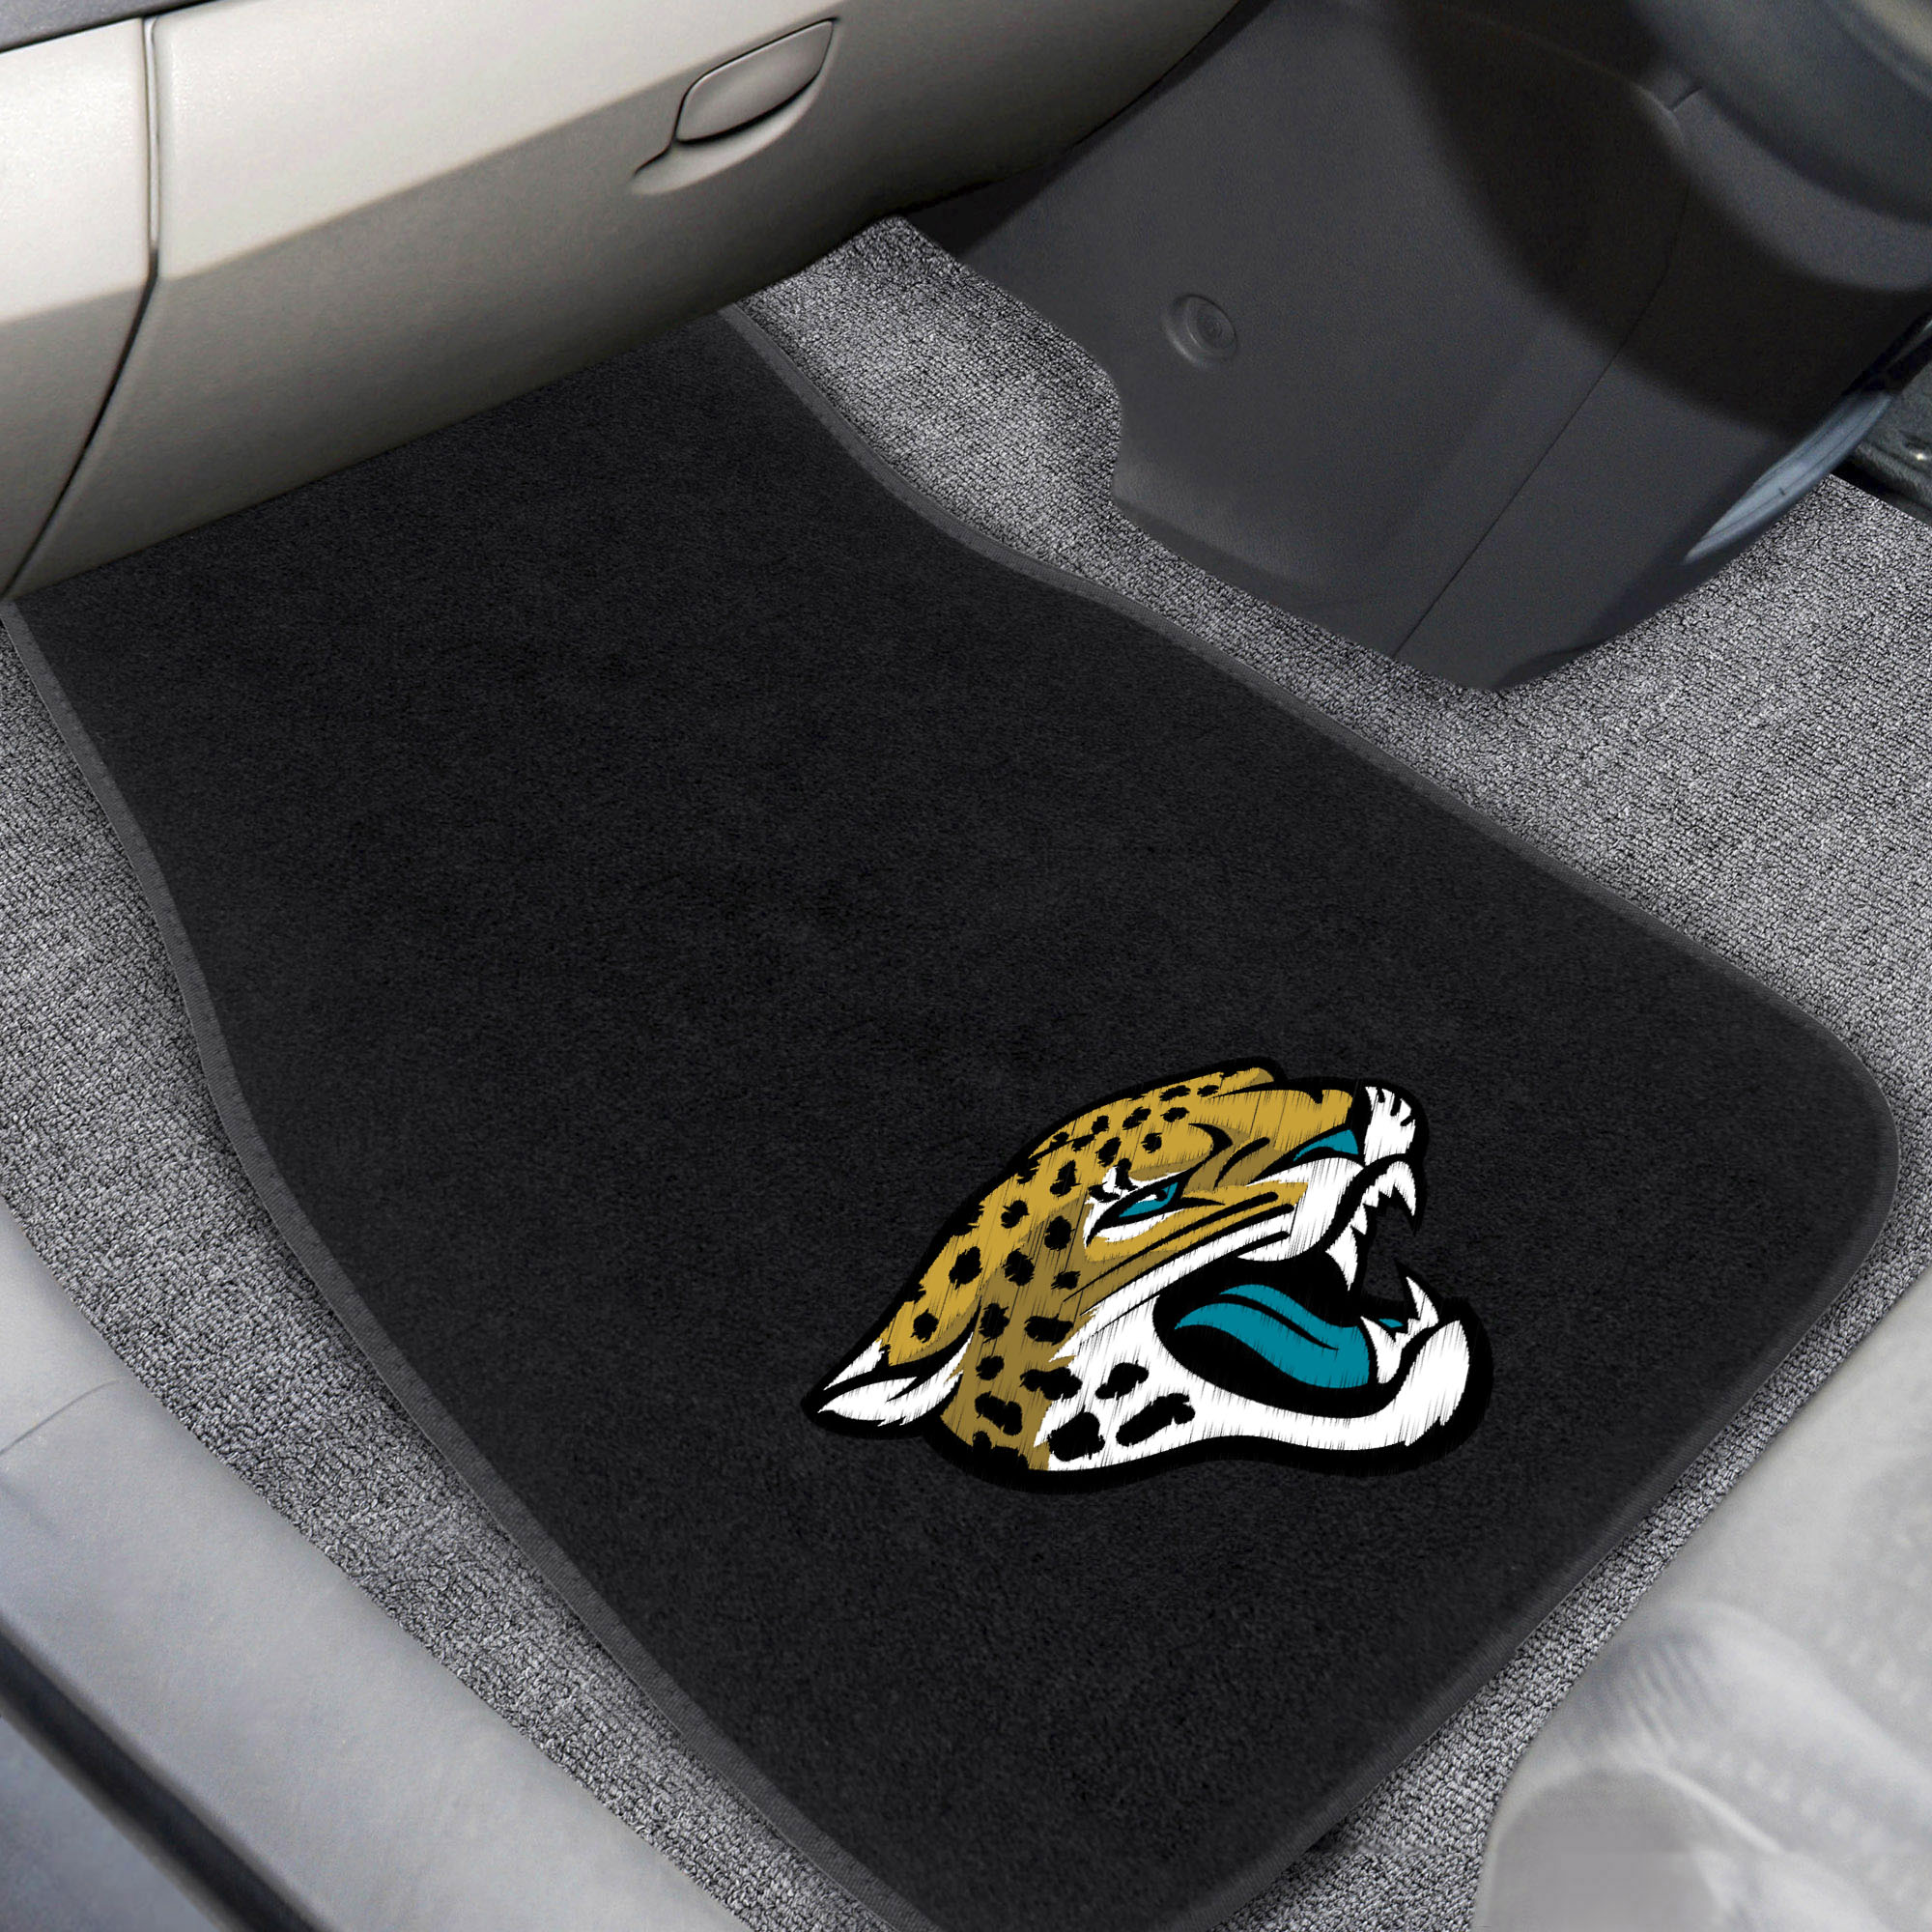 Jacksonville Jaguars Embroidered Car Mat Set â€“ Carpet